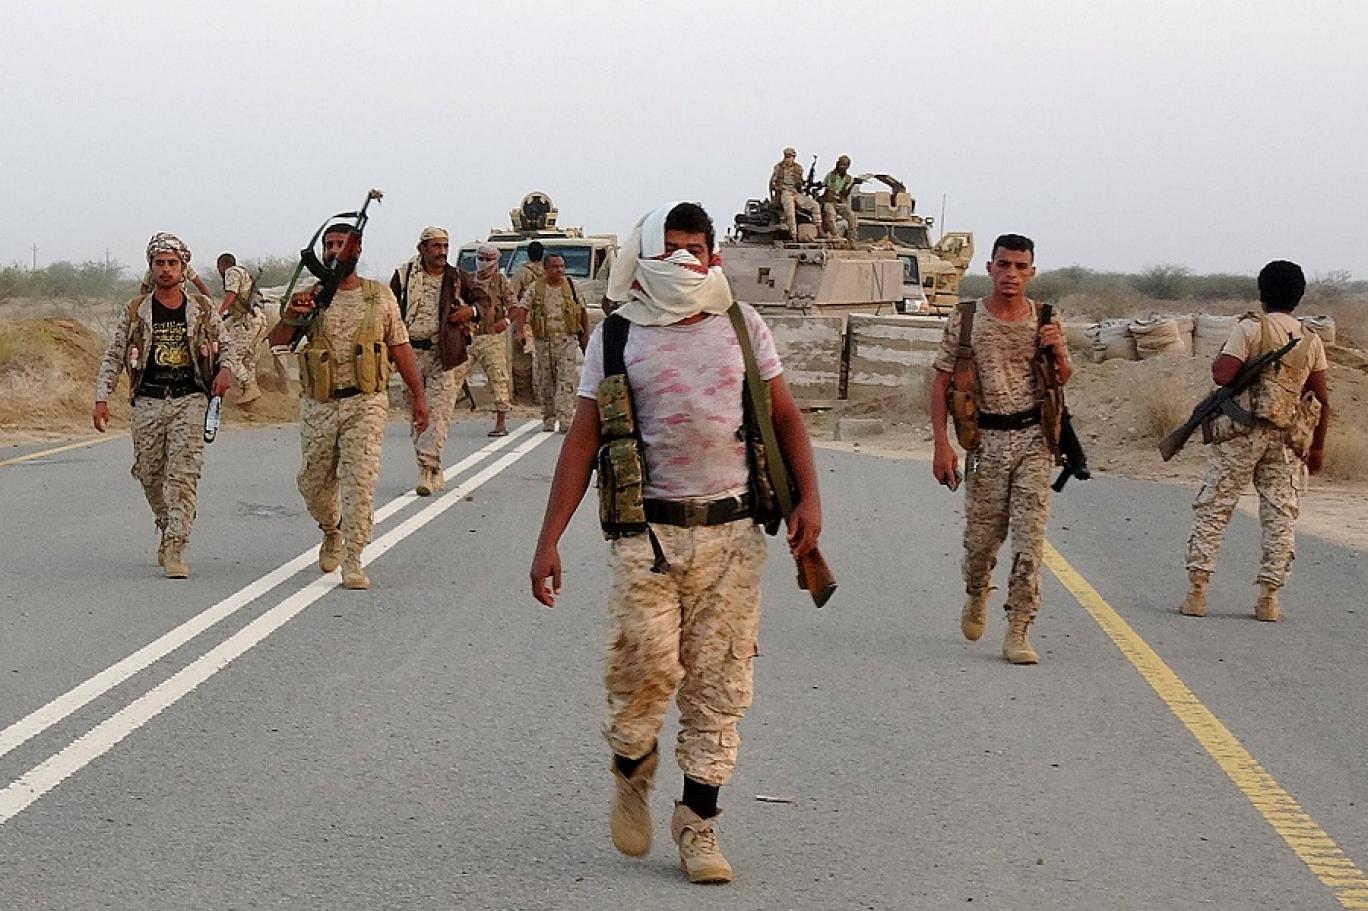 موقع غربي: التصعيد العسكري الأخير يهدد جهود السلام في اليمن